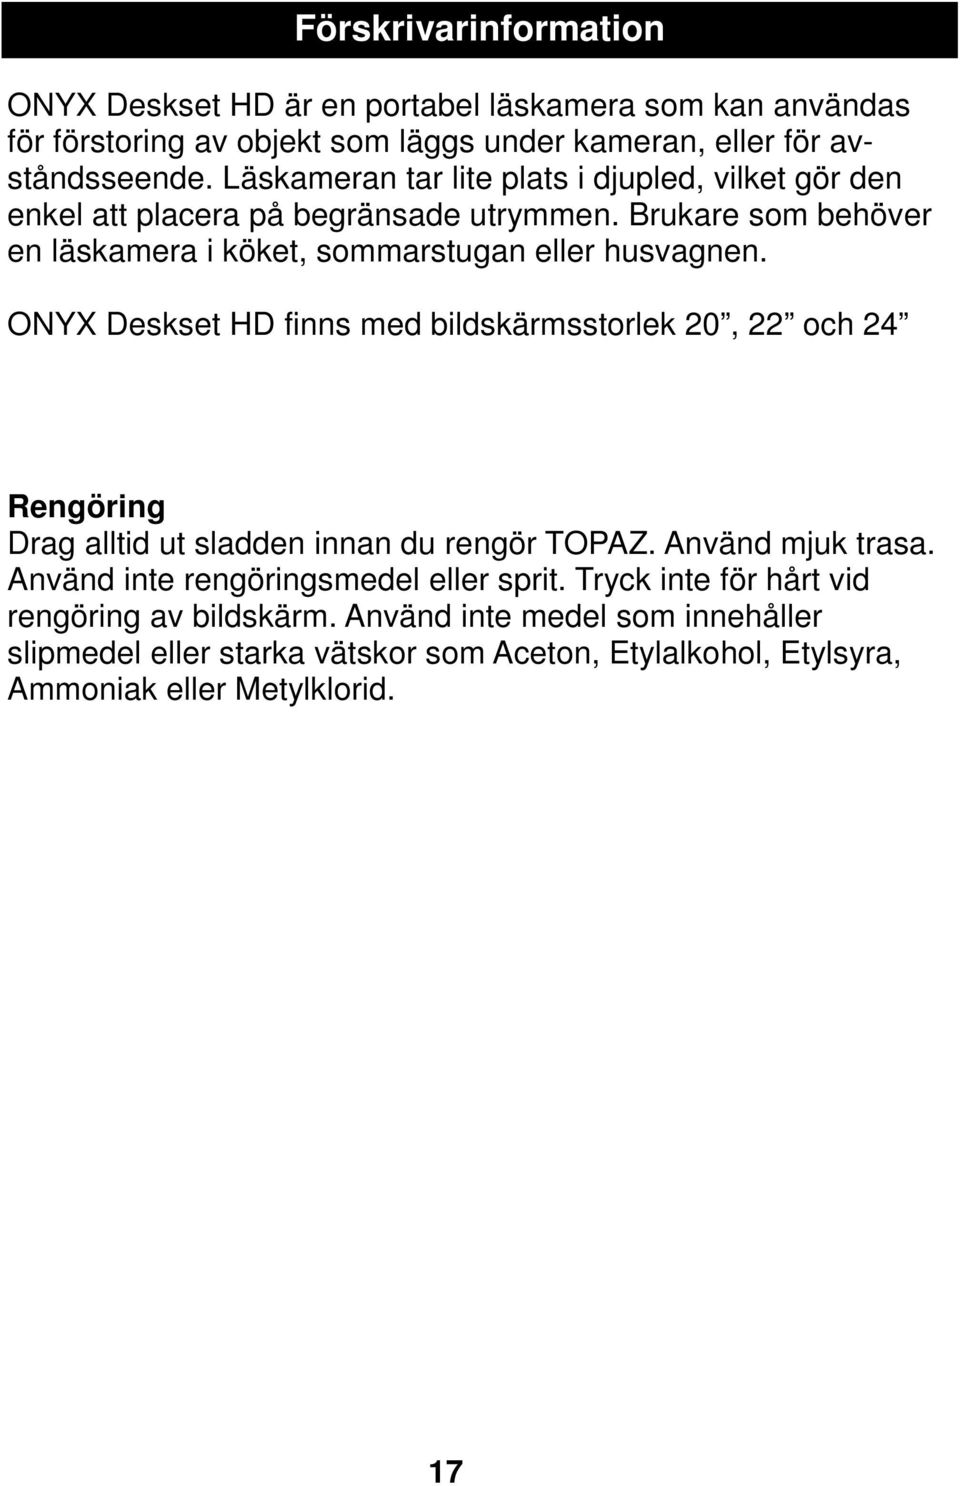 ONYX Deskset HD finns med bildskärmsstorlek 20, 22 och 24 Rengöring Drag alltid ut sladden innan du rengör TOPAZ. Använd mjuk trasa.